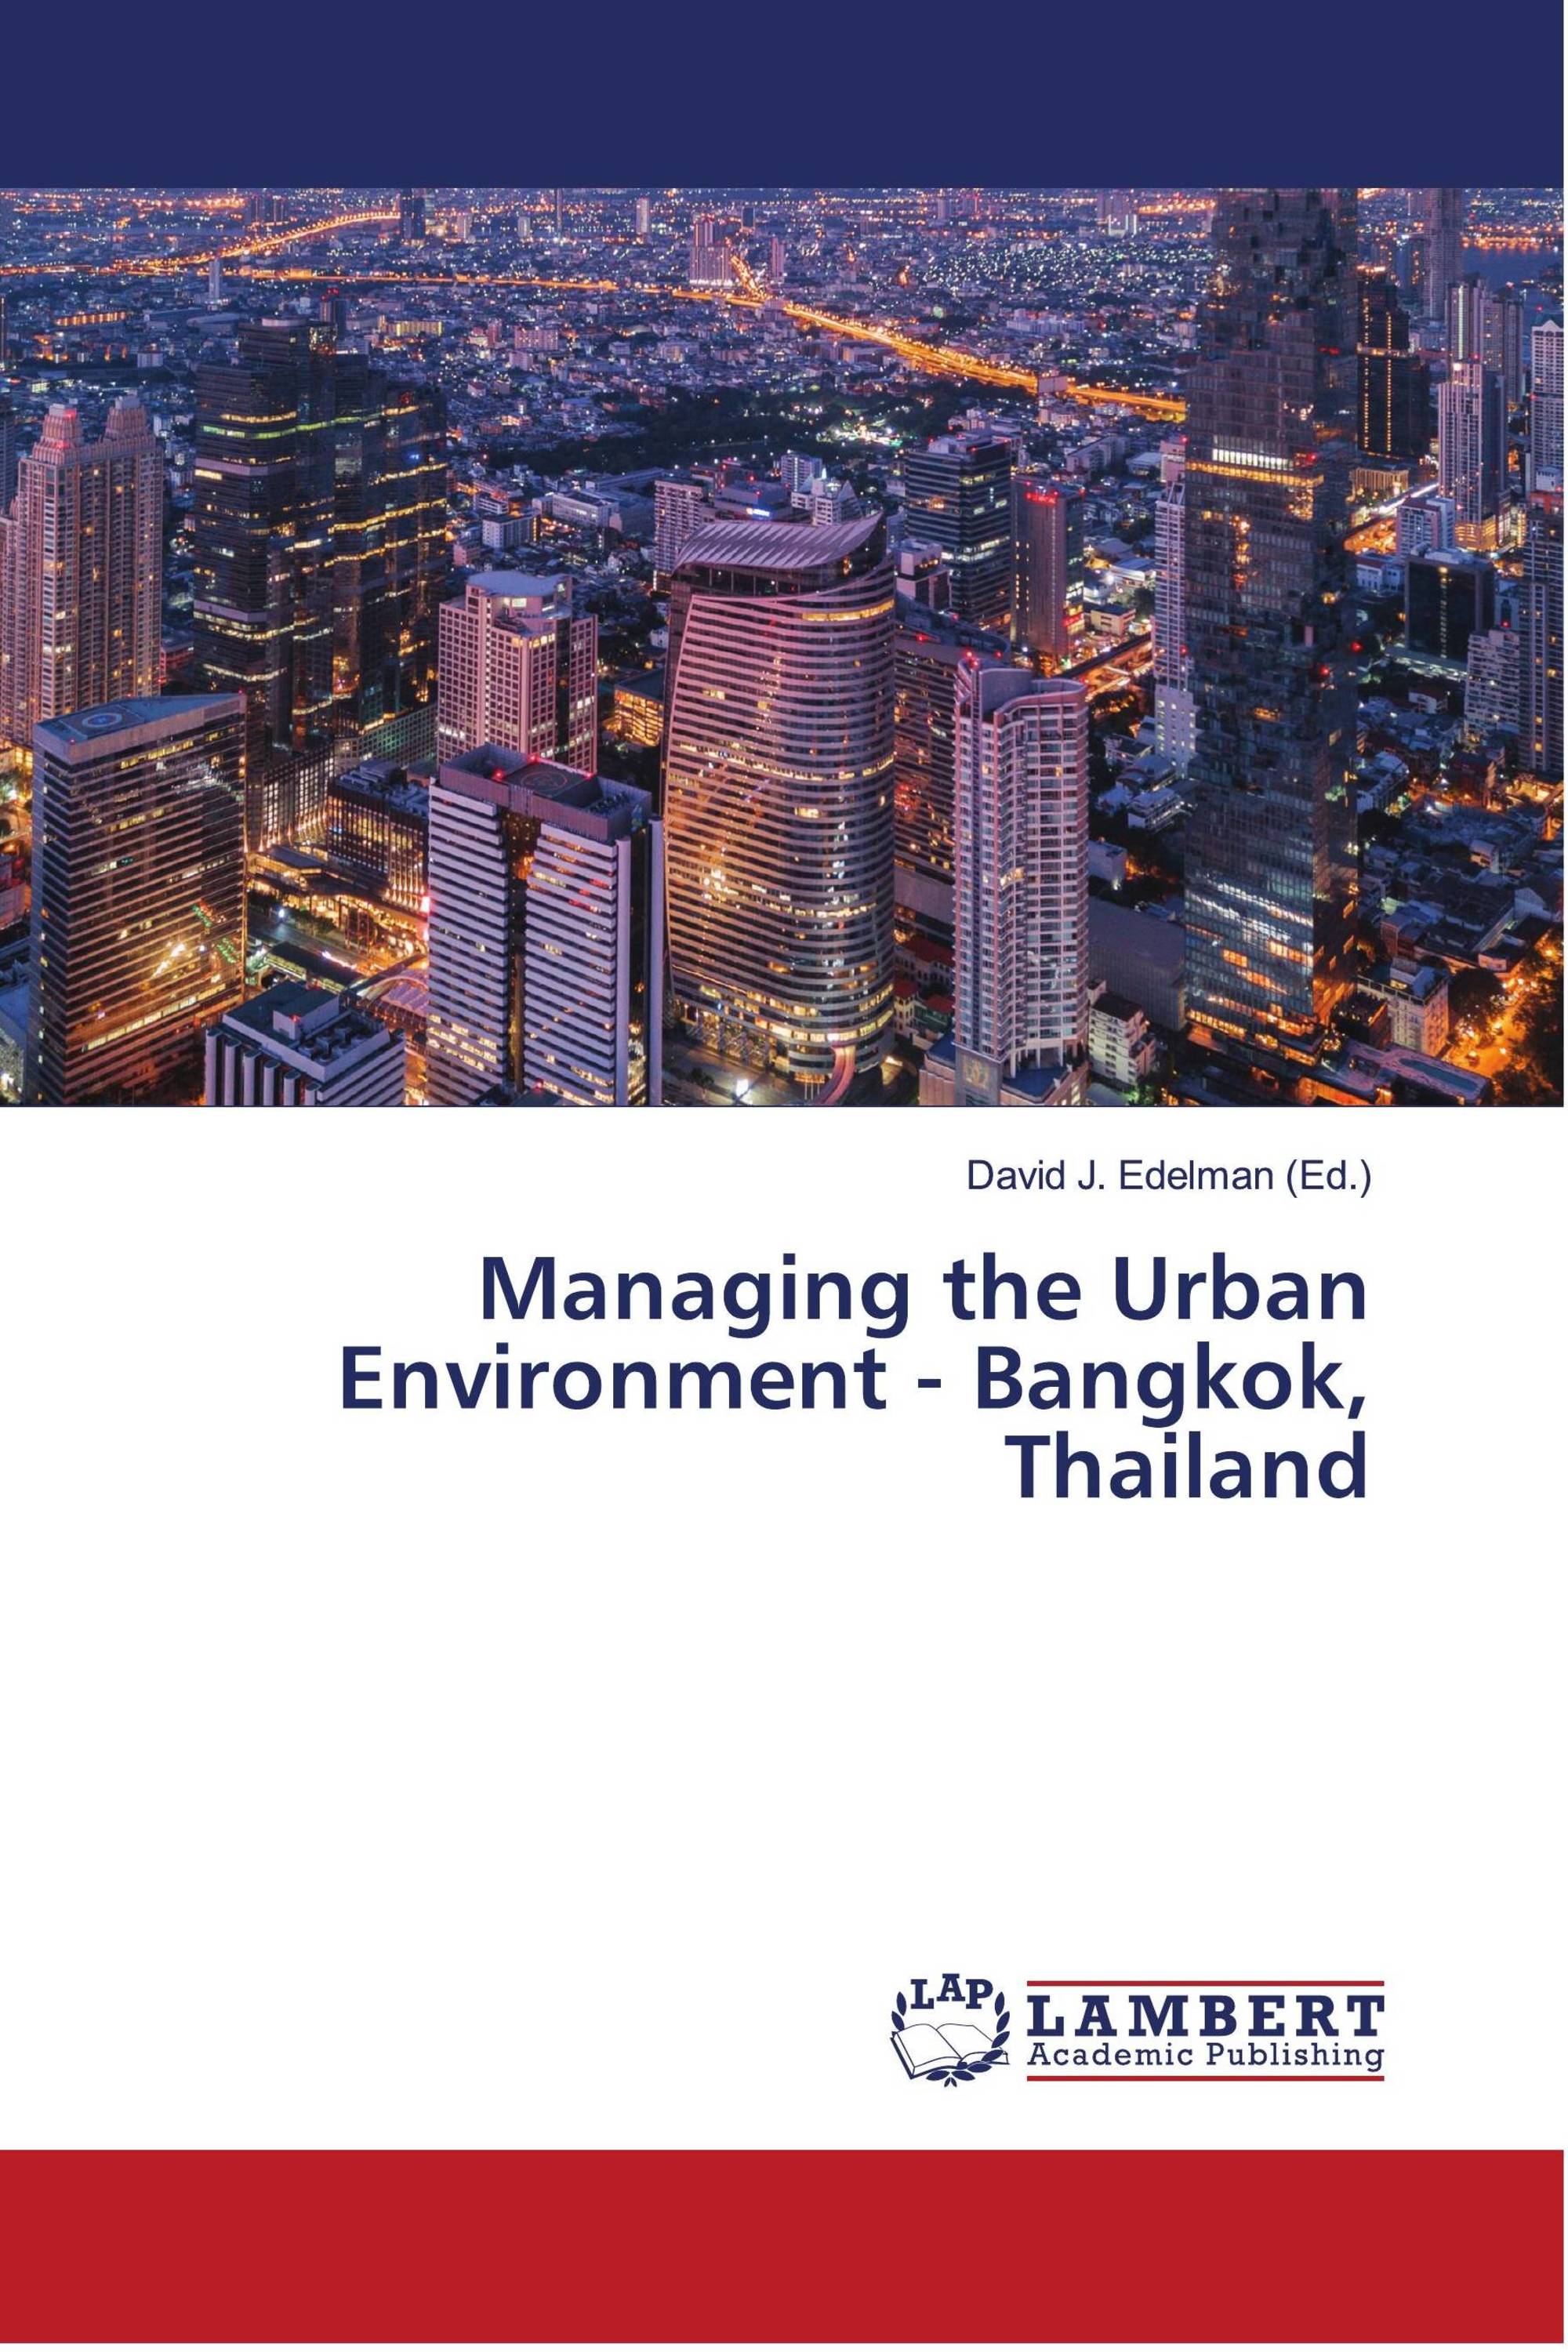 Managing the Urban Environment - Bangkok, Thailand